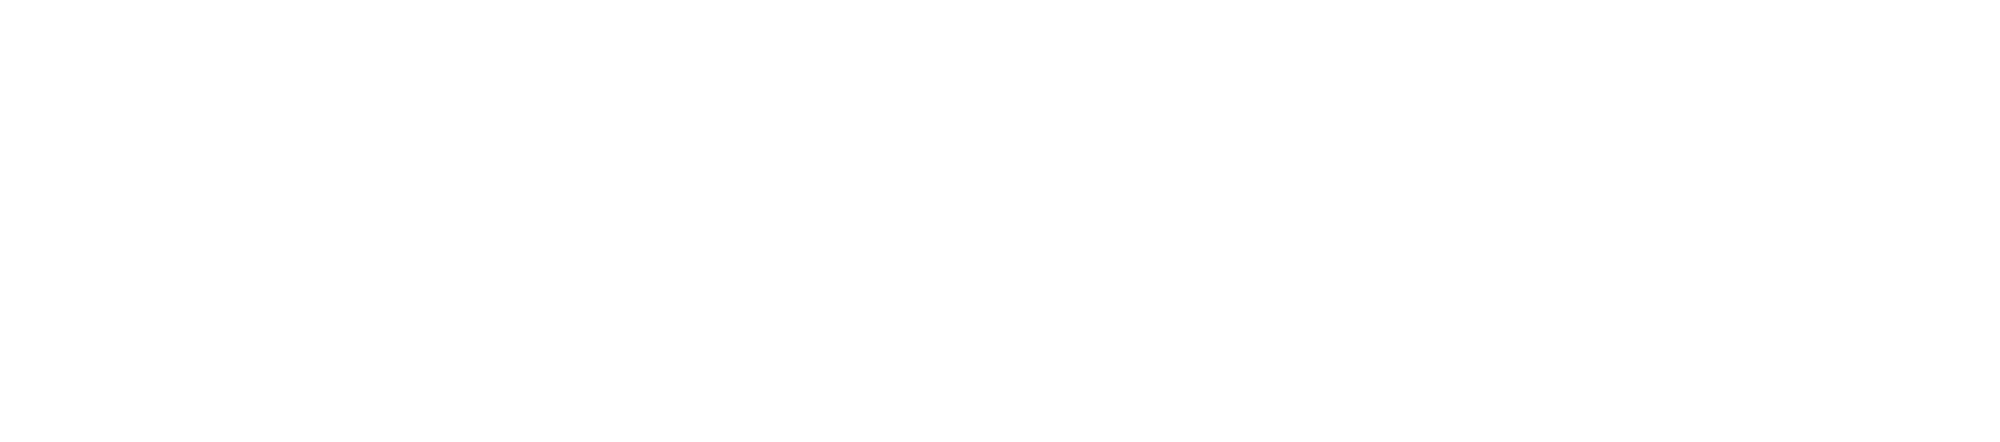 cash app logo White